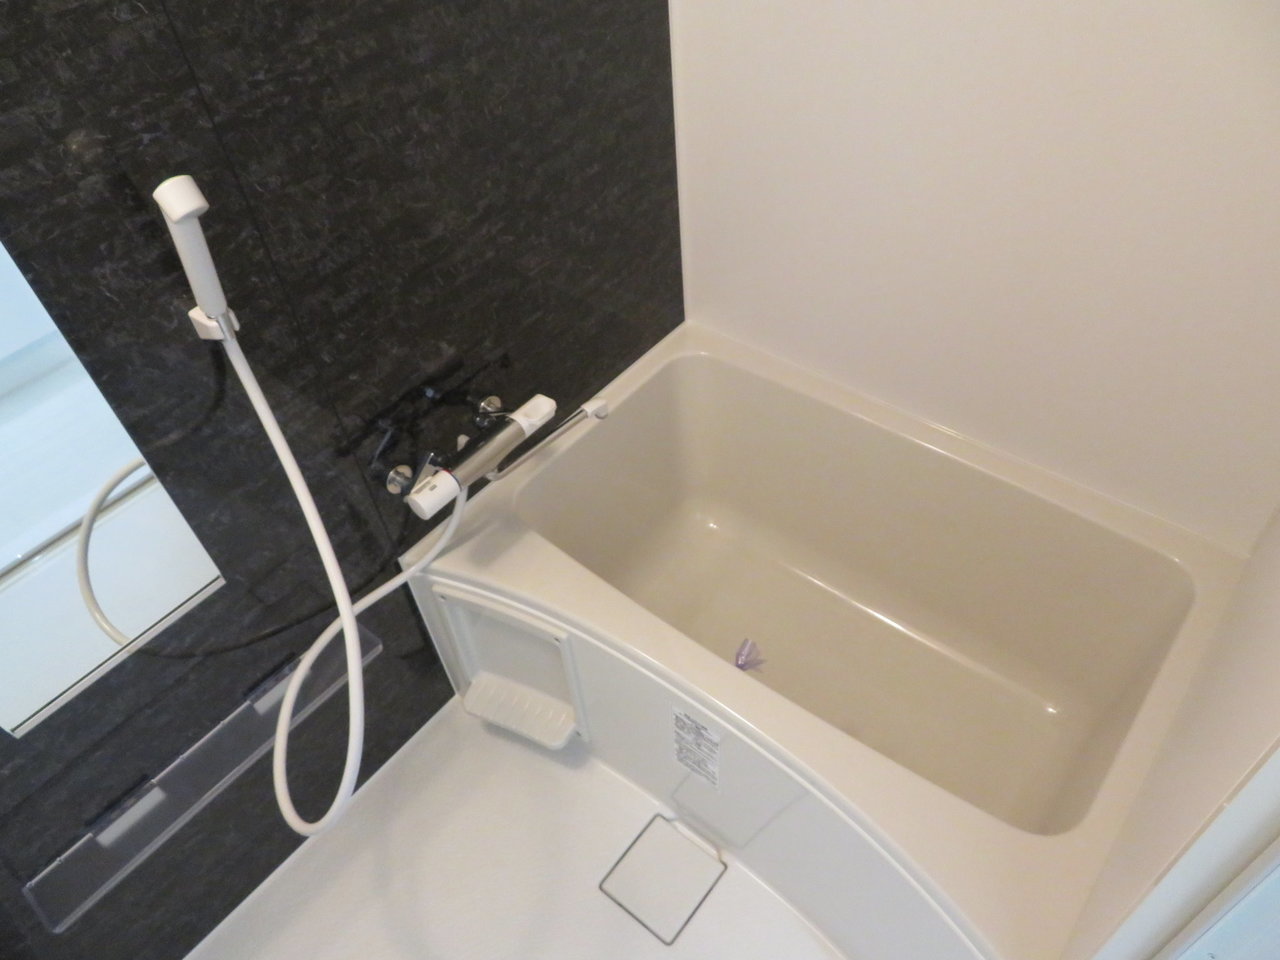 フルリノベーション、ということでもちろんお風呂も新しいものになっていますよ。バストイレ別なのもうれしいですね。独立洗面台も完備されているお部屋です。